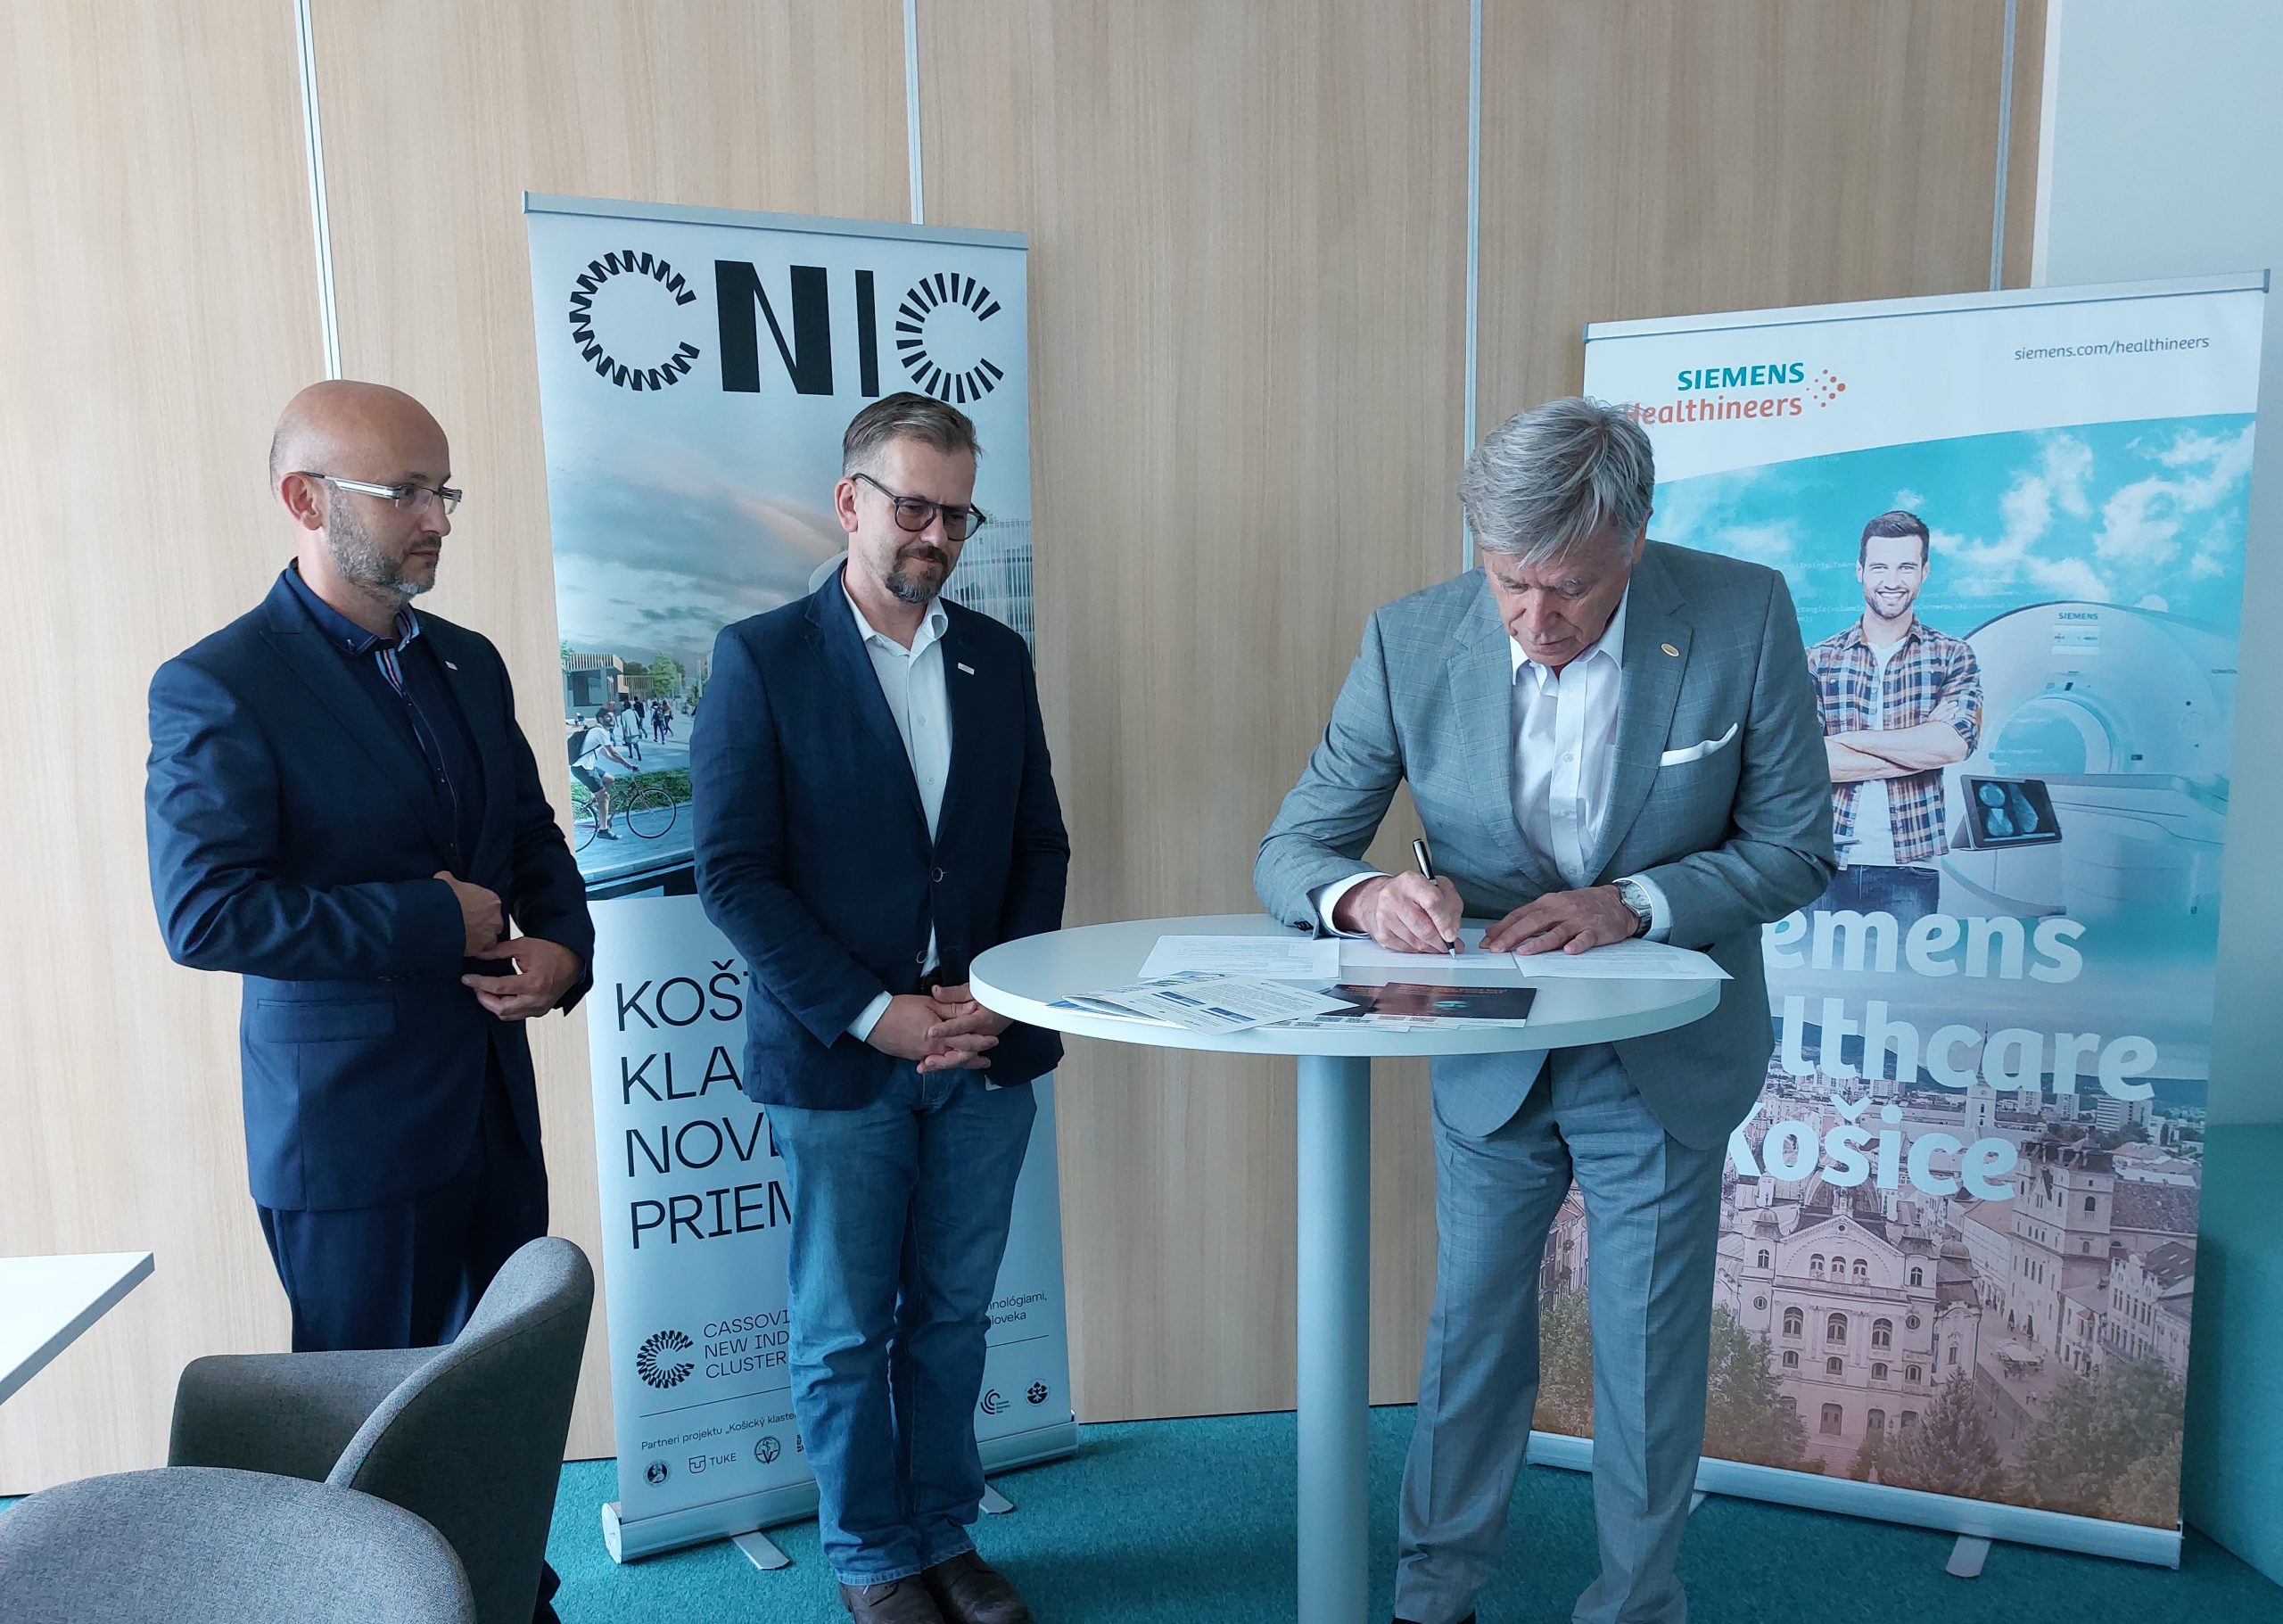 Inovácie CNIC a Siemens Healthineers v oblastiach kybernetickej bezpečnosti, medicíny a biomedicínskeho inžinierstva prinesú rast východnému Slovensku